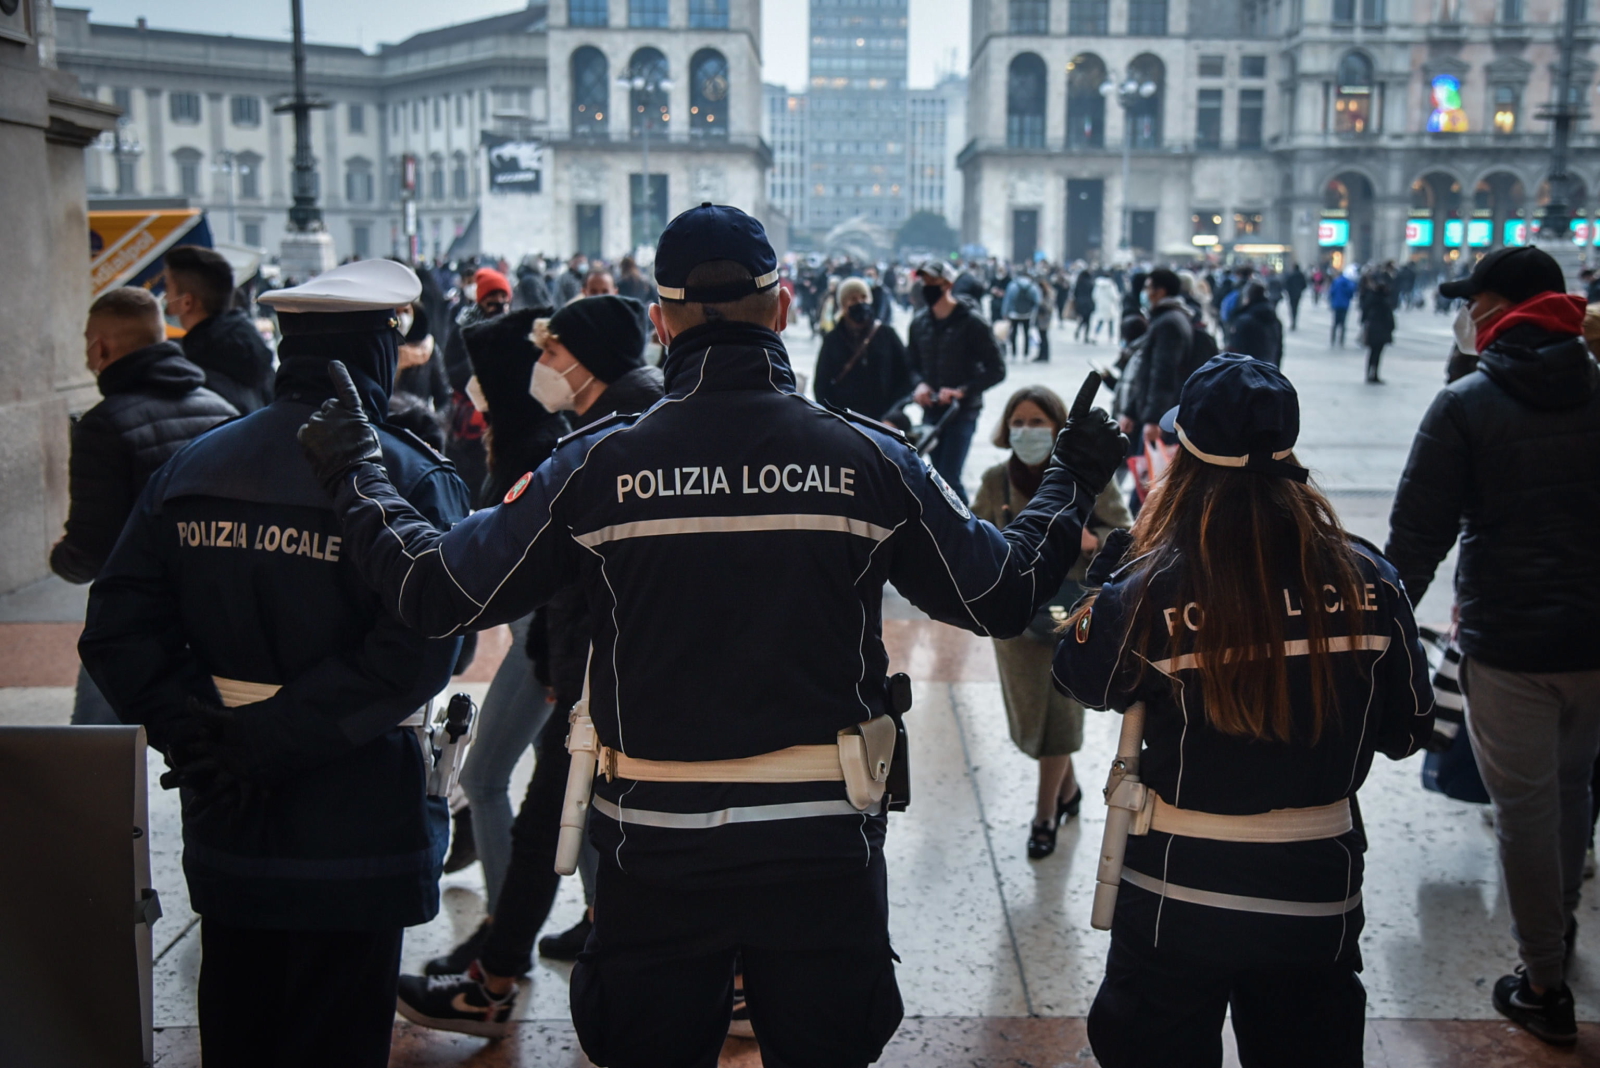 Zakupy przedświąteczne we włoskim Milanie koordynuje policja. Fot. EPA/MATTEO CORNER 